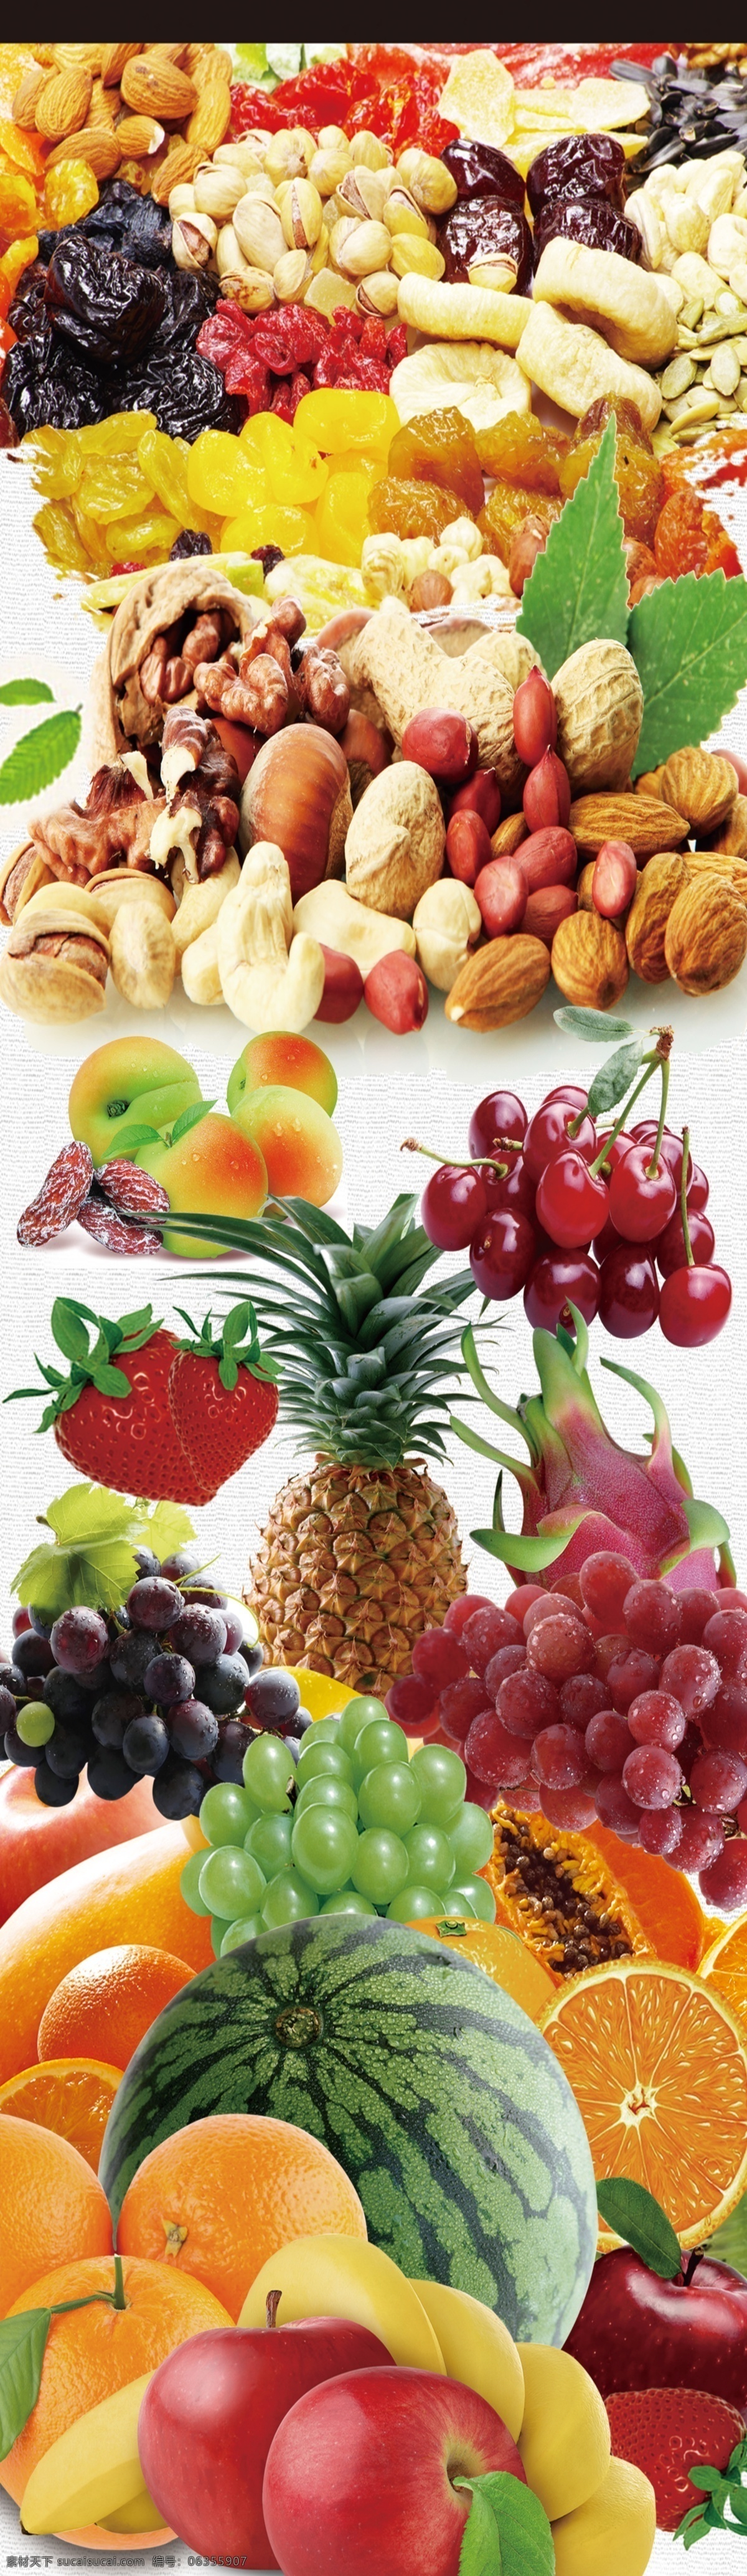 水果海报图片 水果海报 水果 超市水果